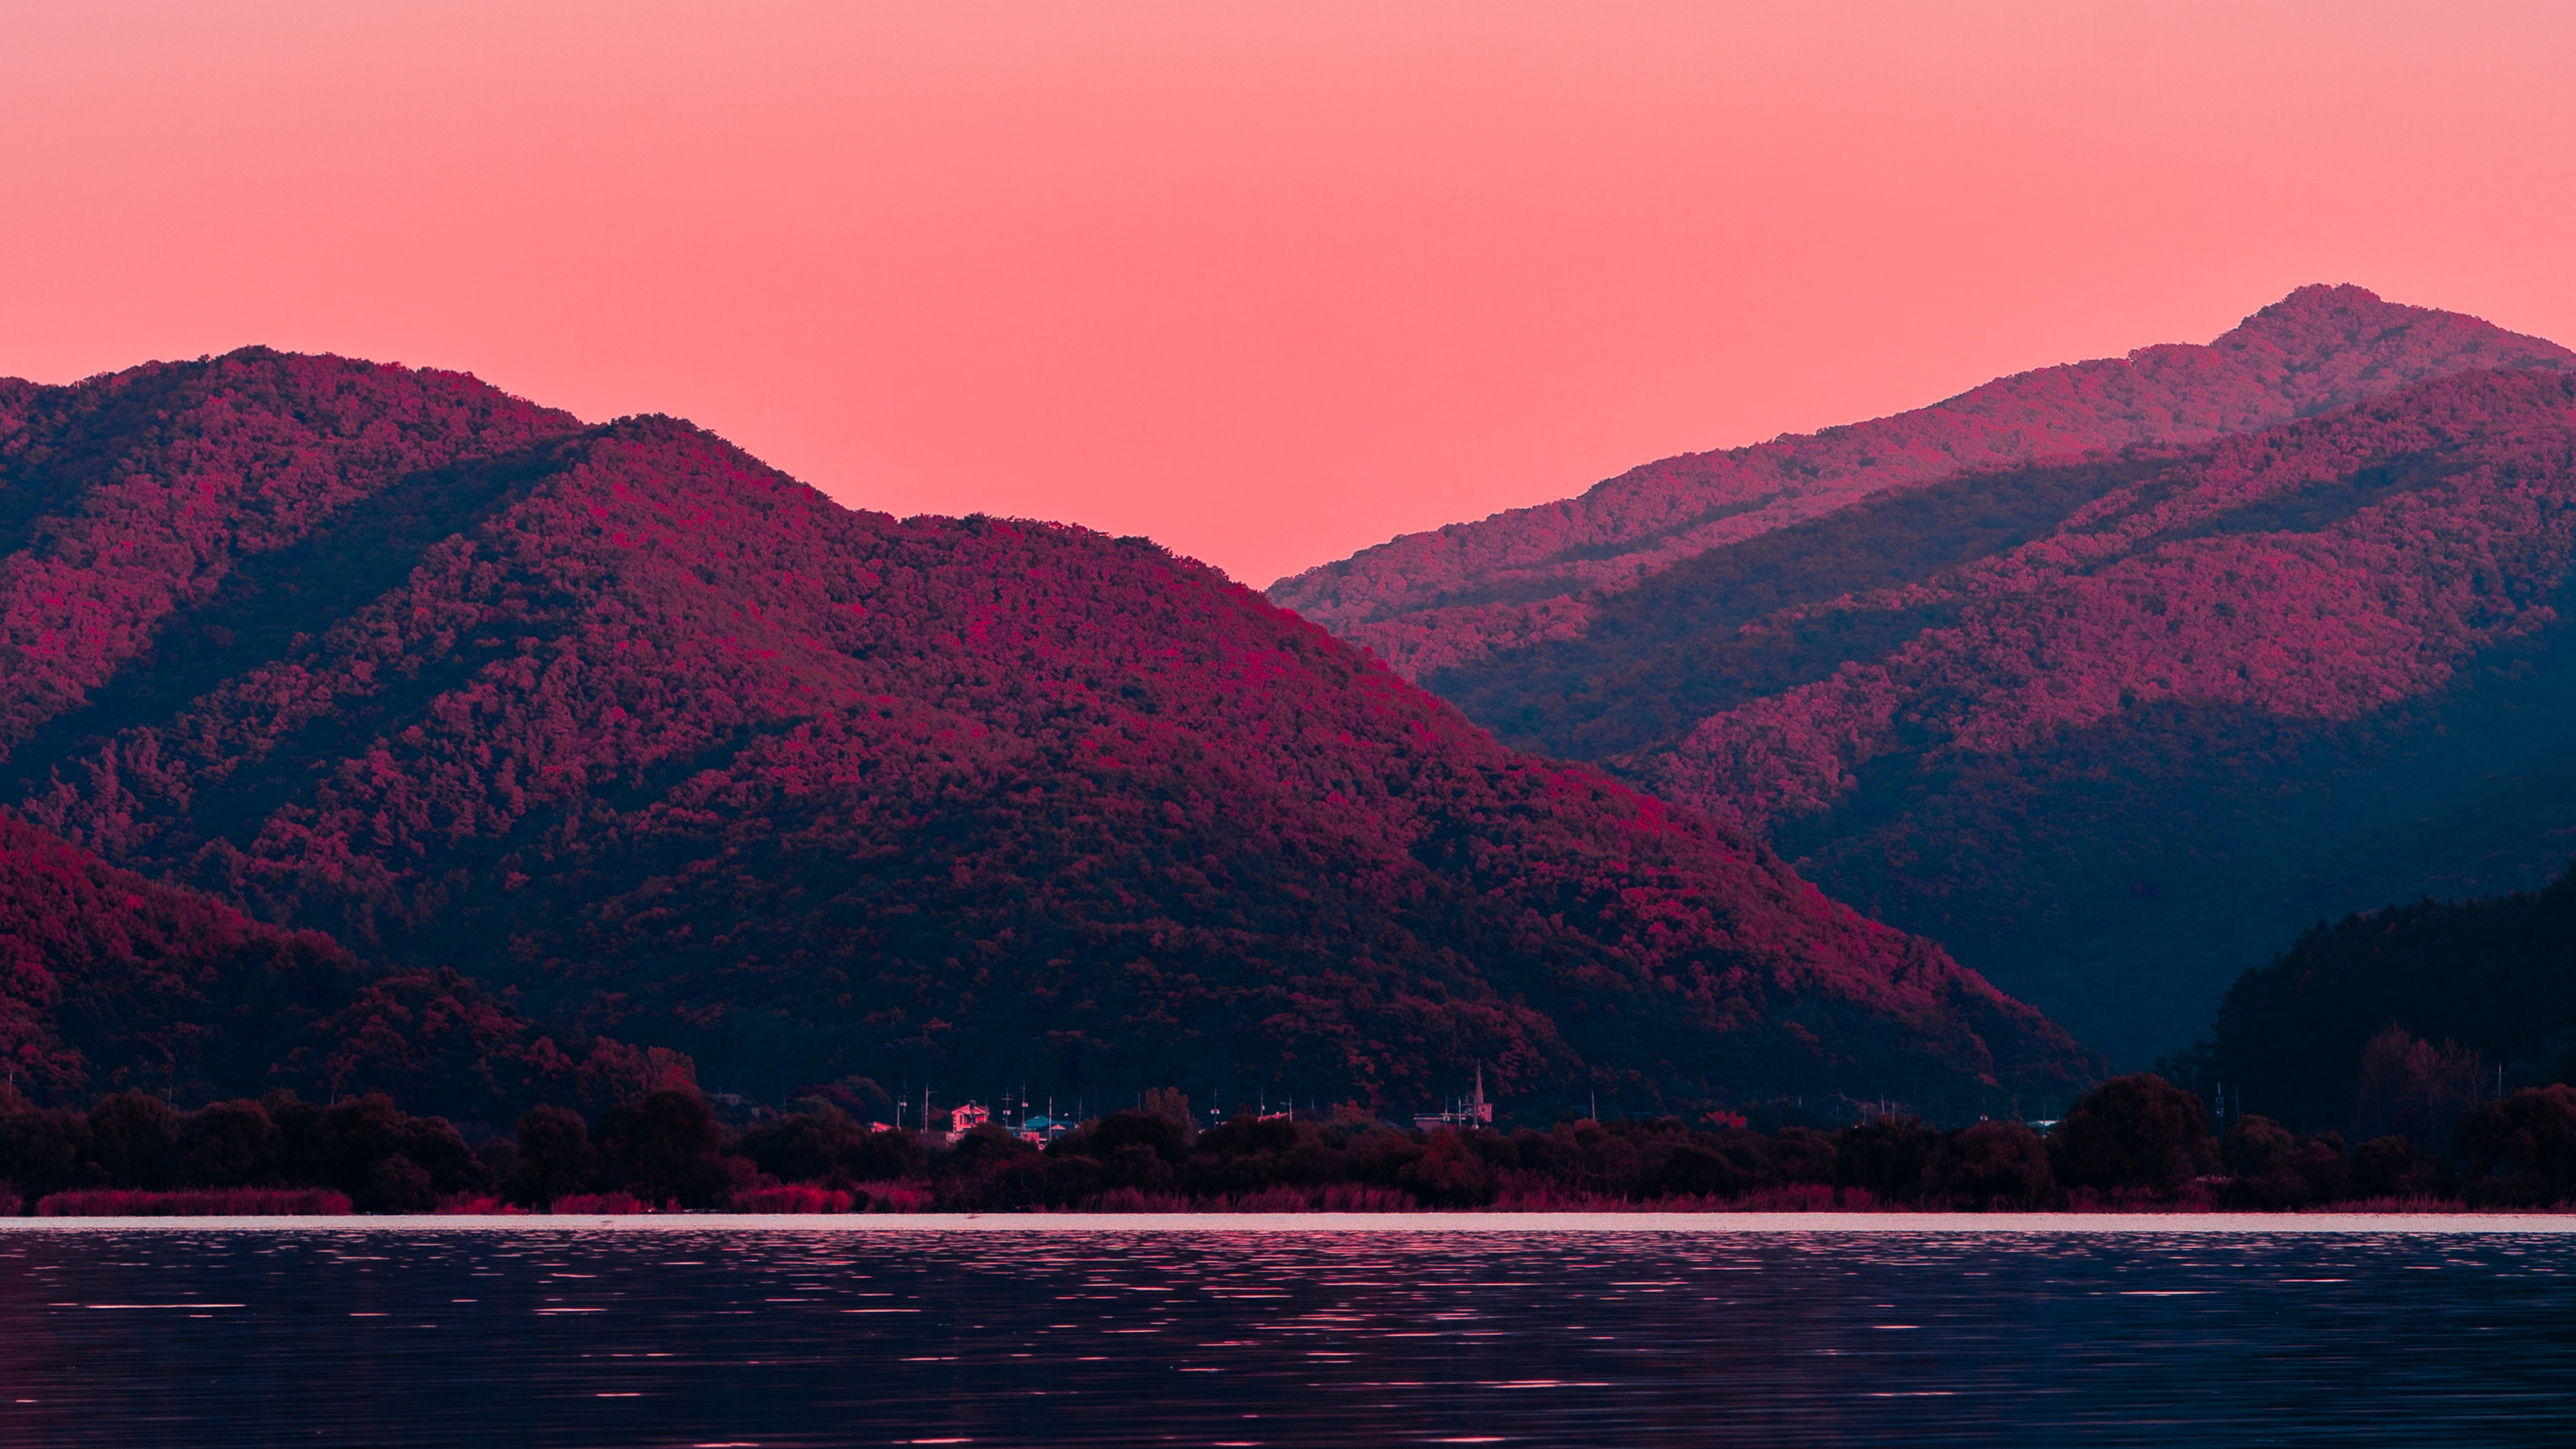 Фото обои горы, розовое небо, вечер, пейзажи - бесплатные картинки на Fonwall